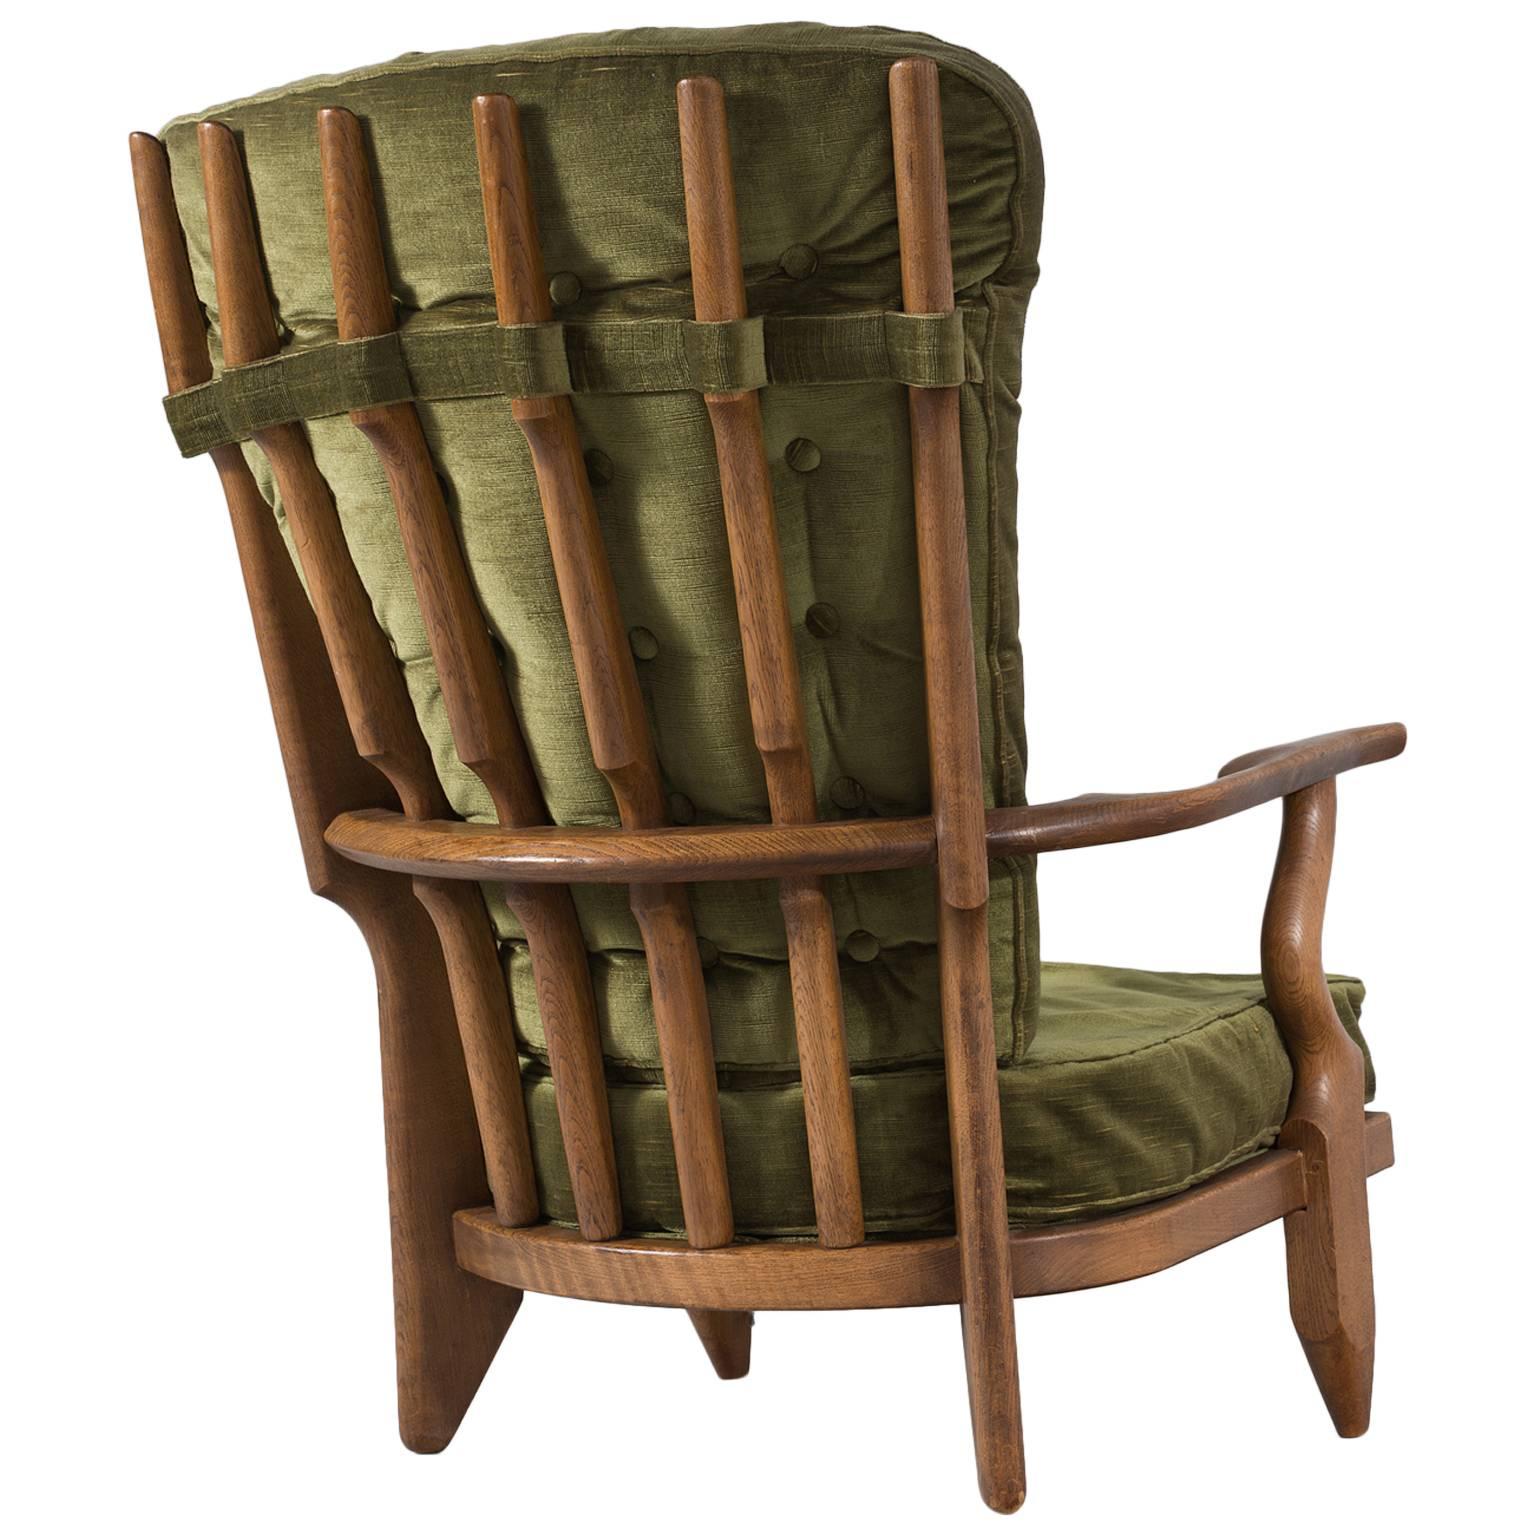 Guillerme & Chambron High Back Chair in Green Velvet Upholstery